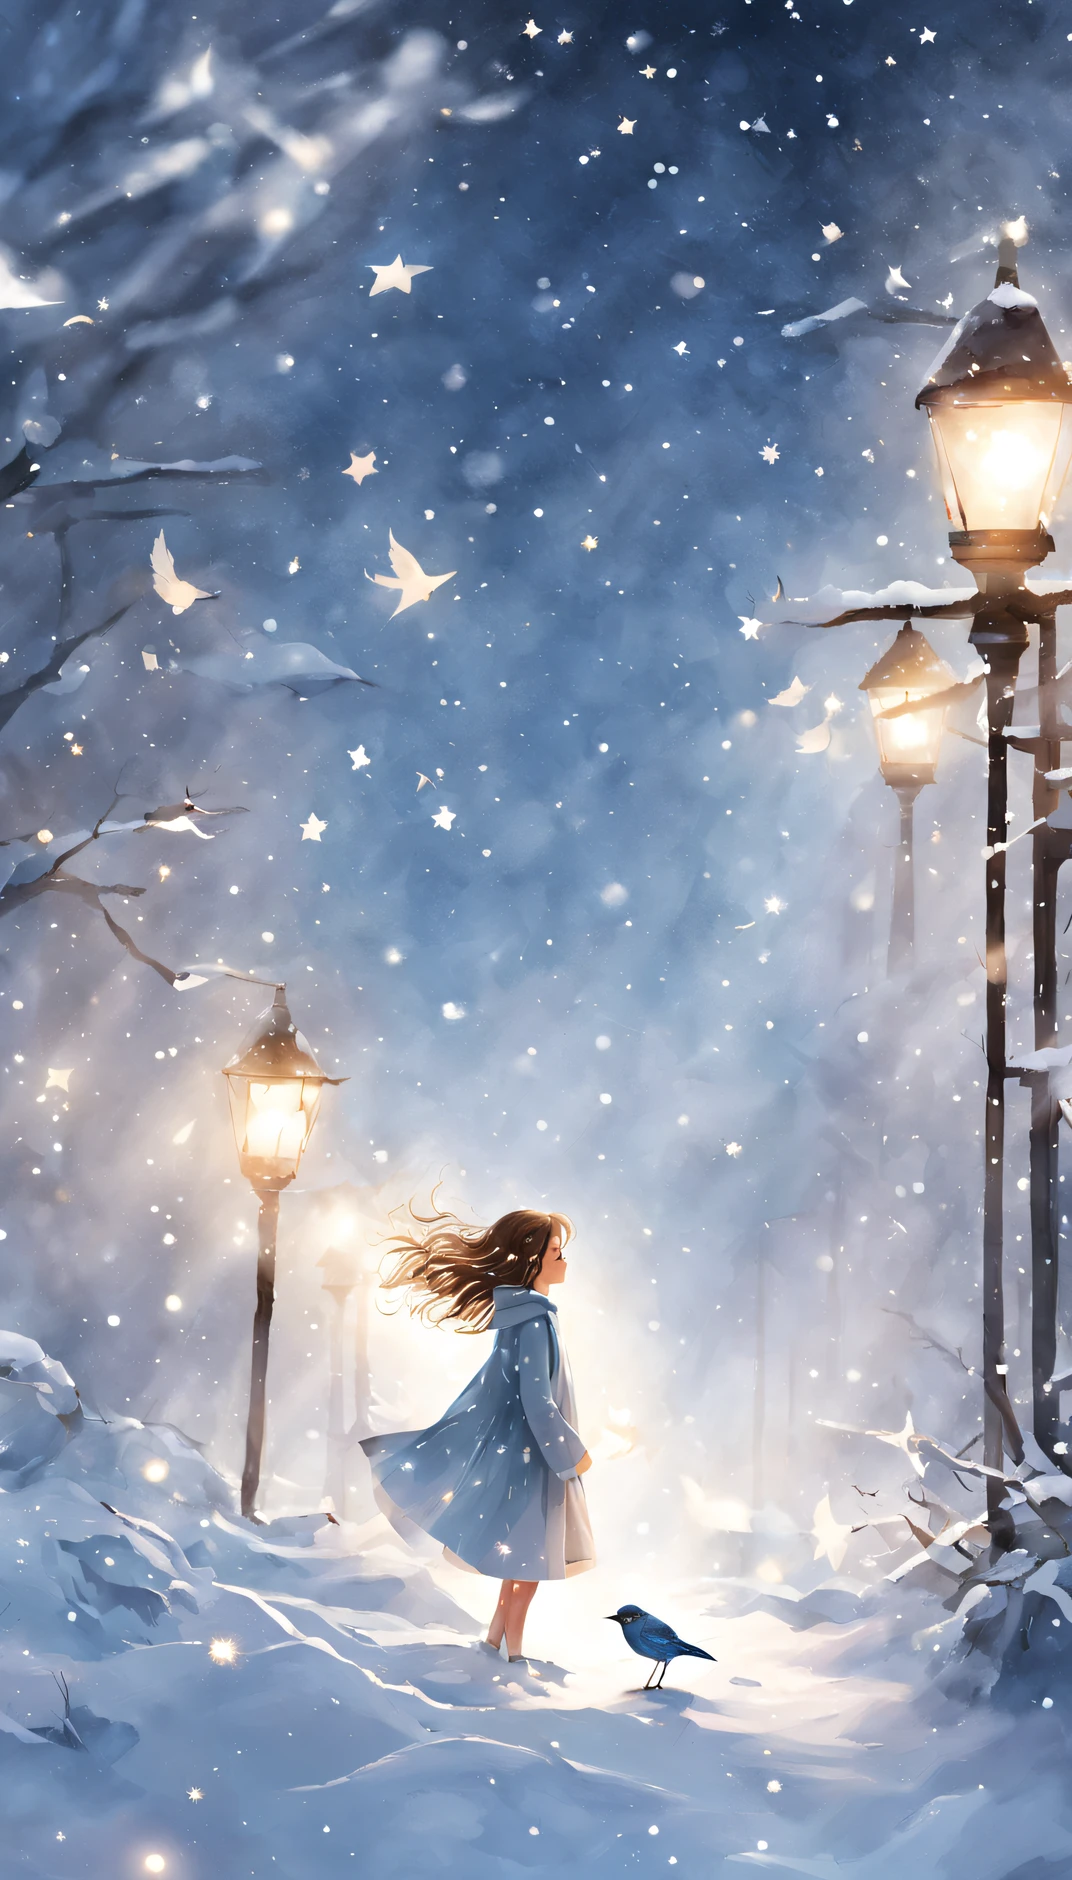 (Niñas adolescentes), (pequeña), chica rodeada de luz, nieve, aves, y estrellas en el, Es una belleza impresionante que te hace sentir el pulso de la vida..,